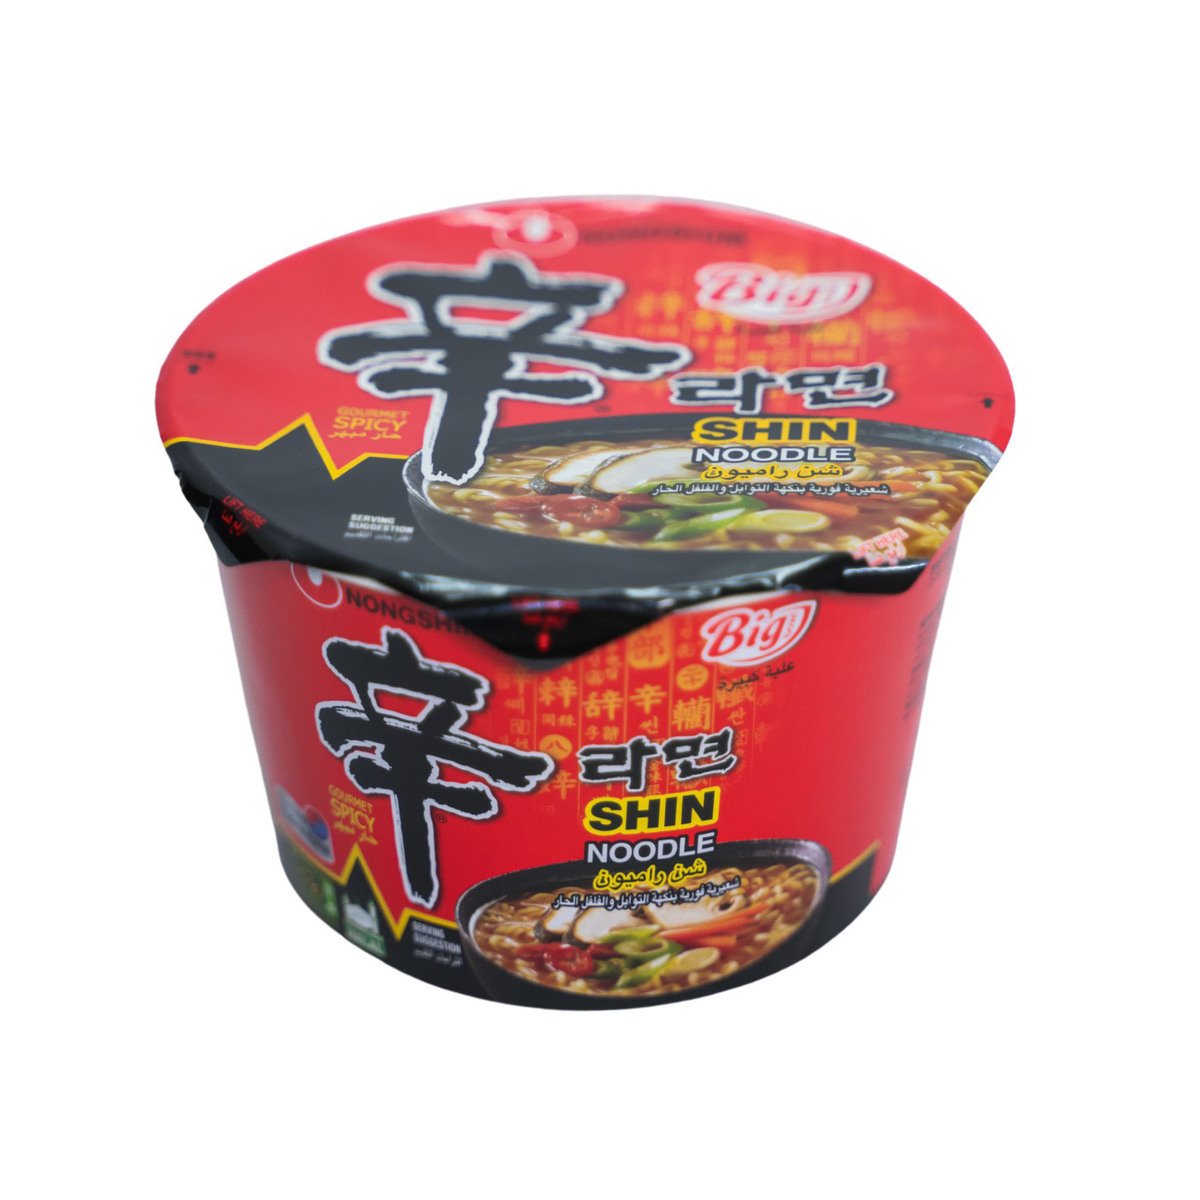 Nongshim Shin Noodle Soup 114 g